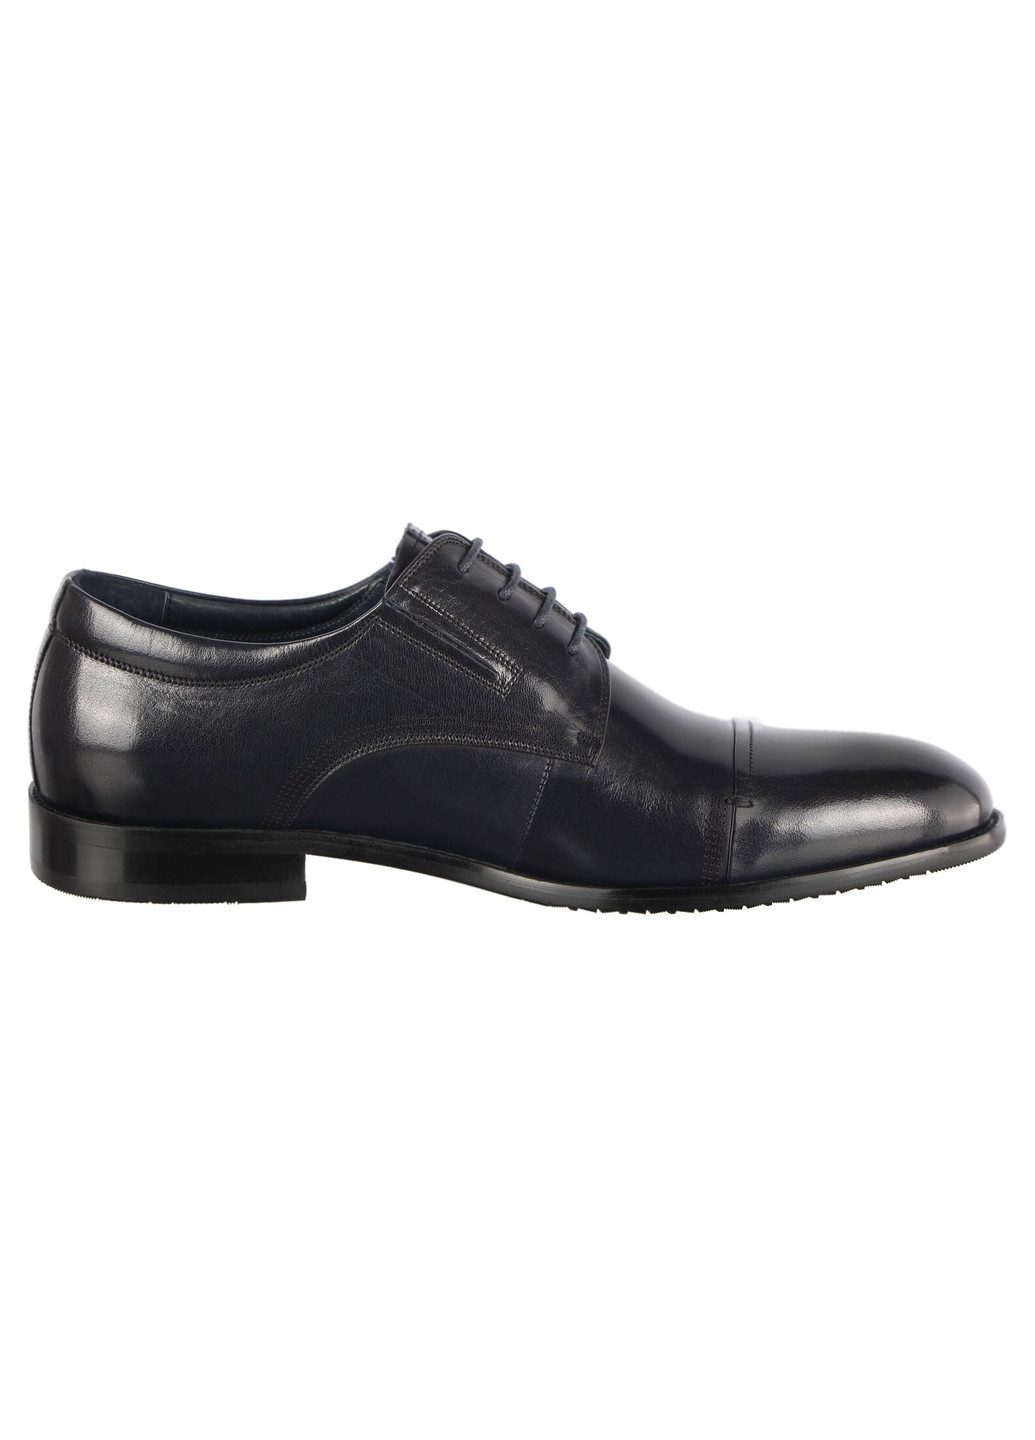 Черные мужские классические туфли 196352 Cosottinni на шнурках